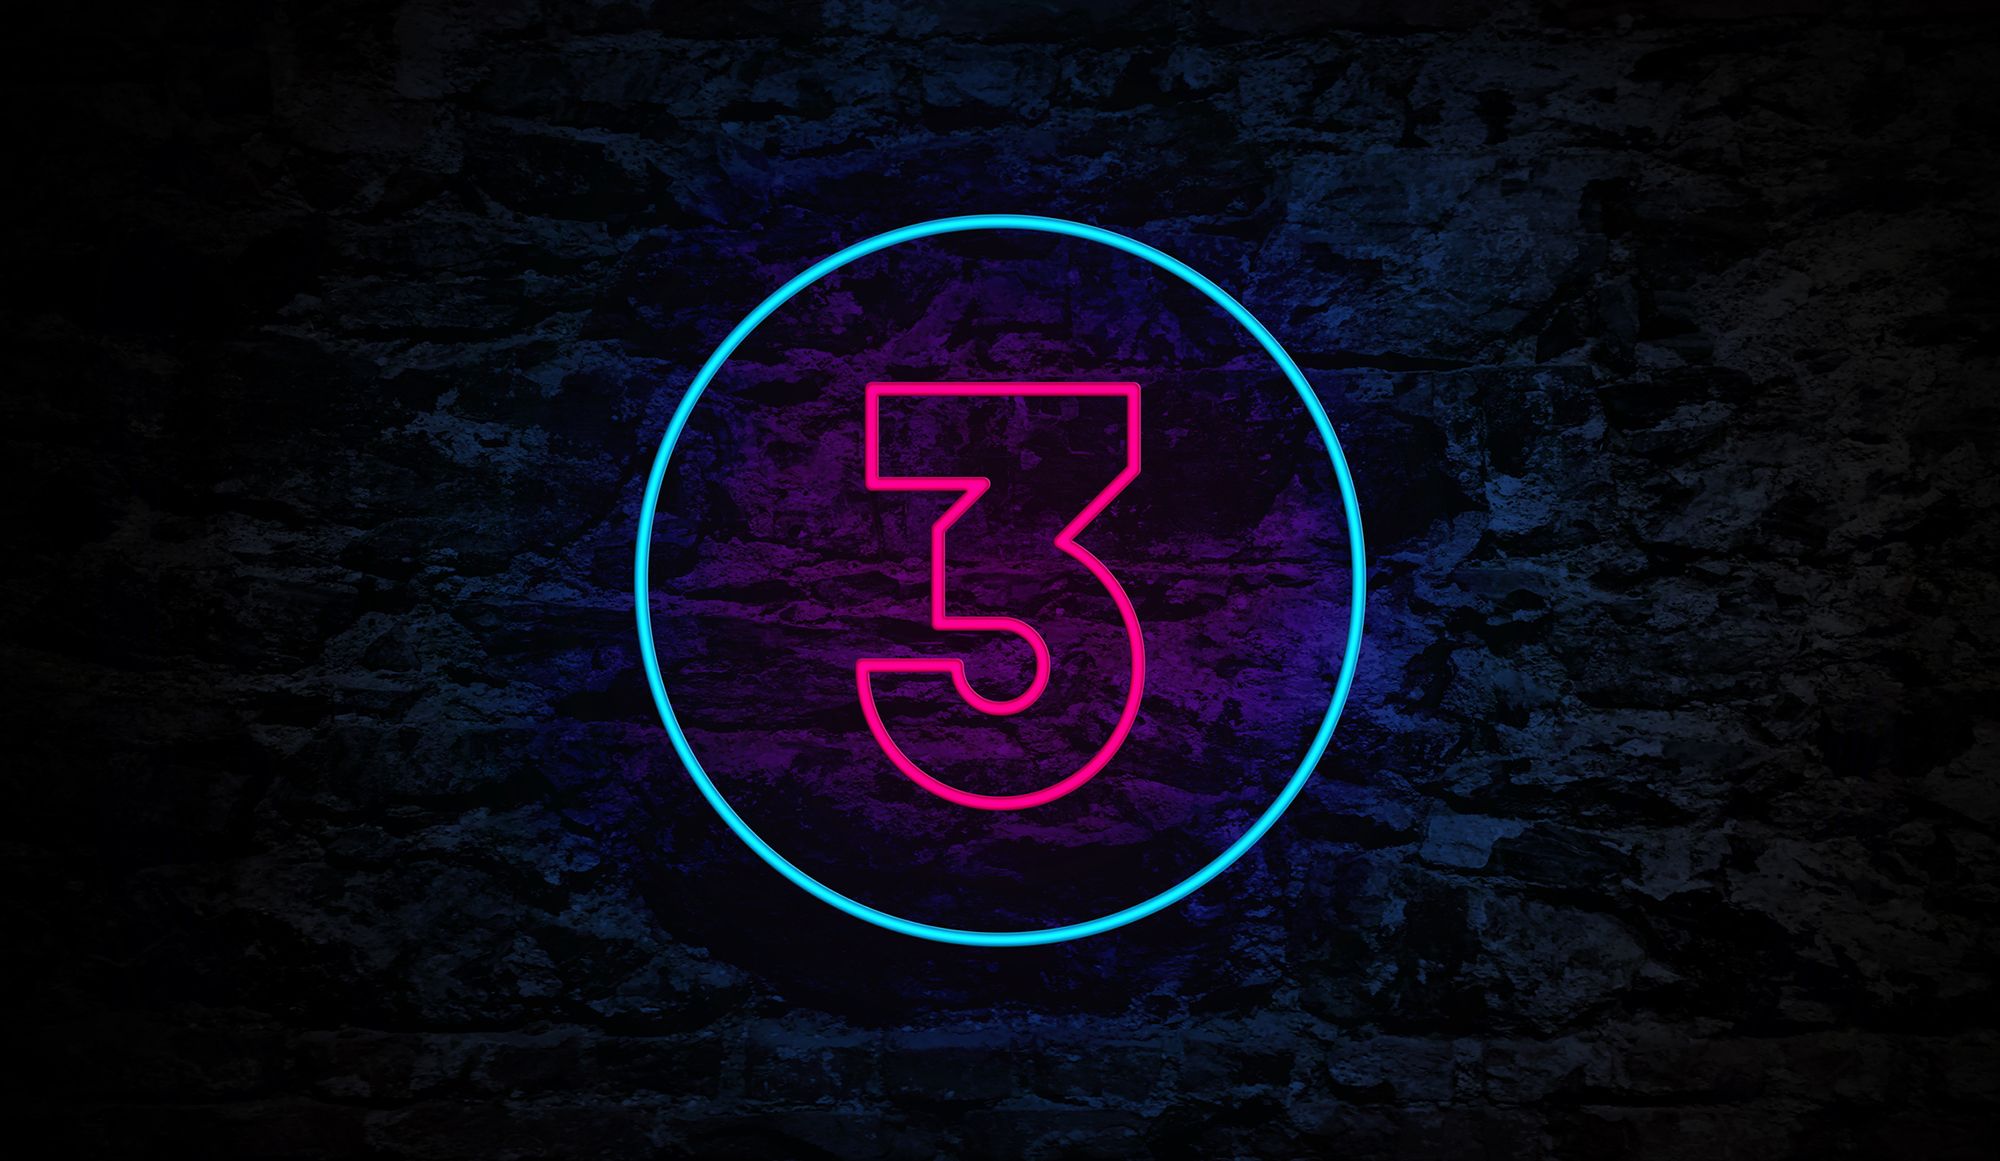 Pinke neon-farbende Drei mit blauem Kreis auf dunklem Hintergrund